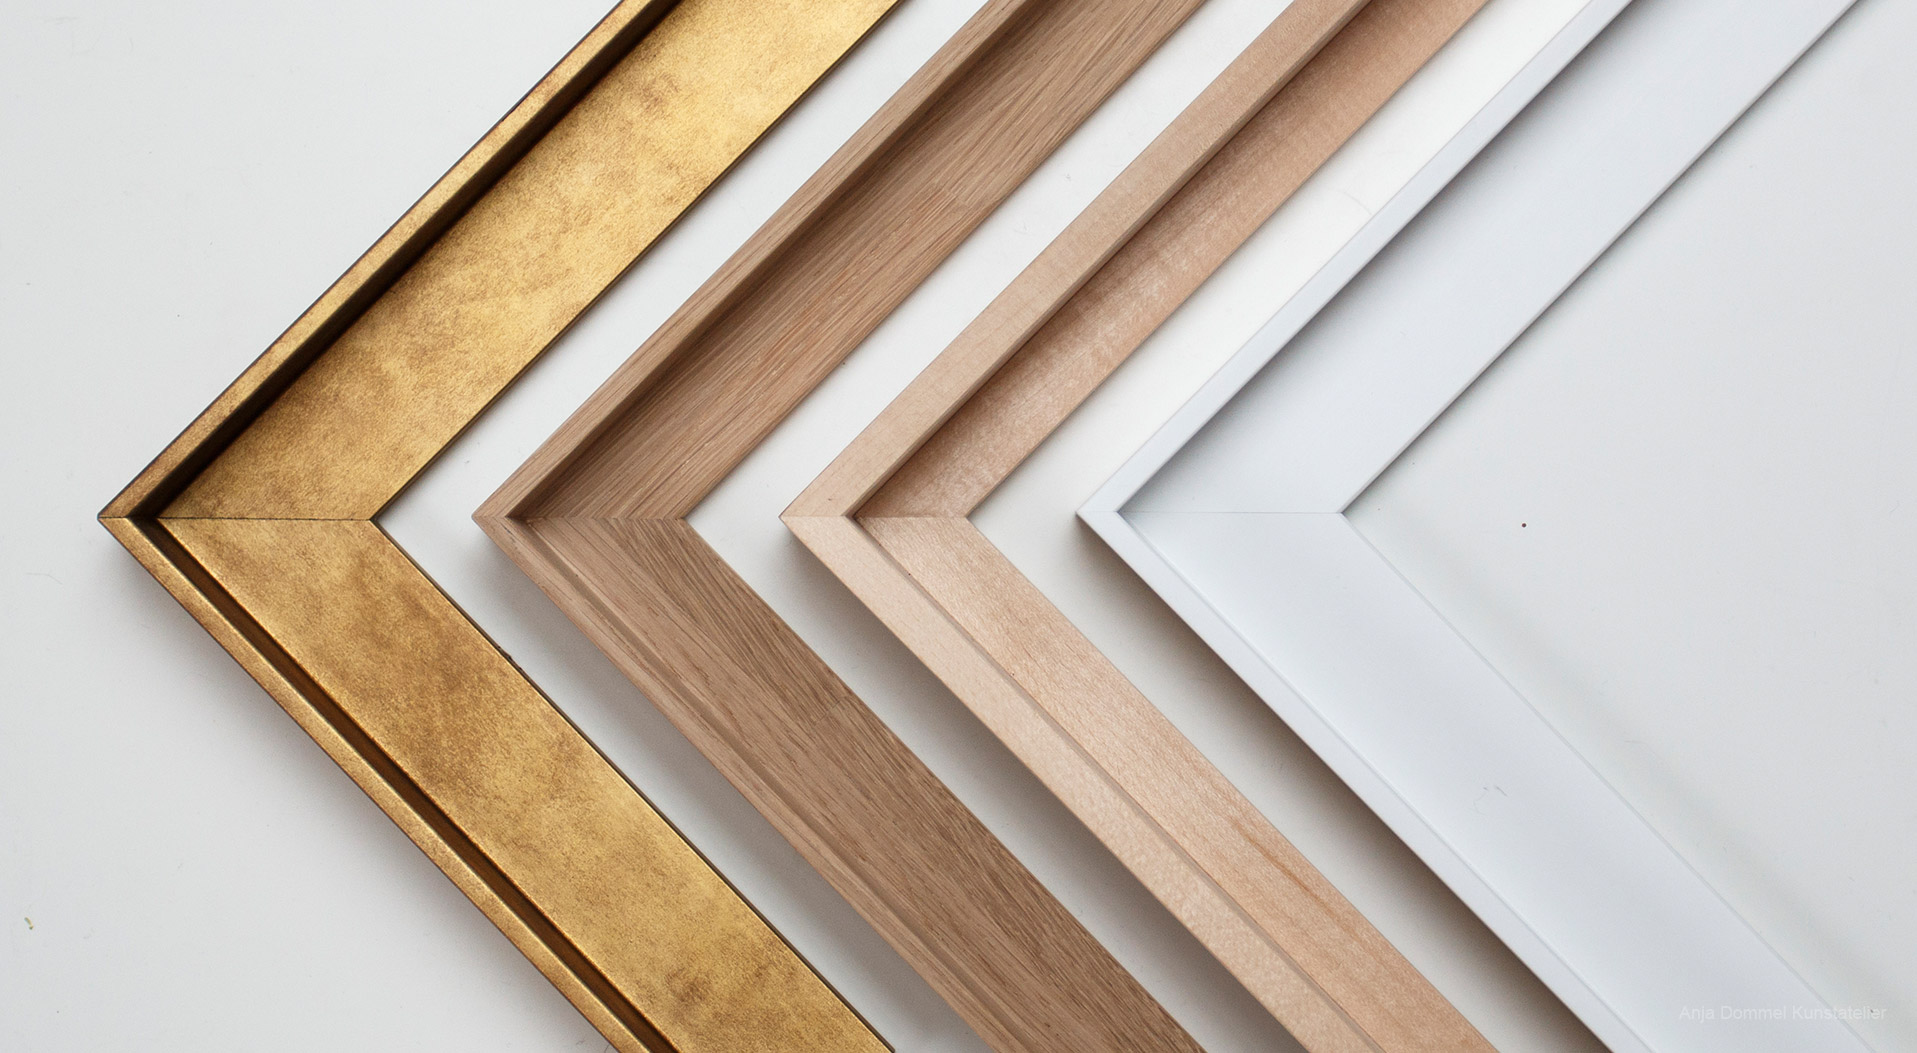 Bilderrahmen nach Maß aus Holz in Gold, Eiche, Linde und Weiß mit Schattenfuge für einen freischwebenden Effekt